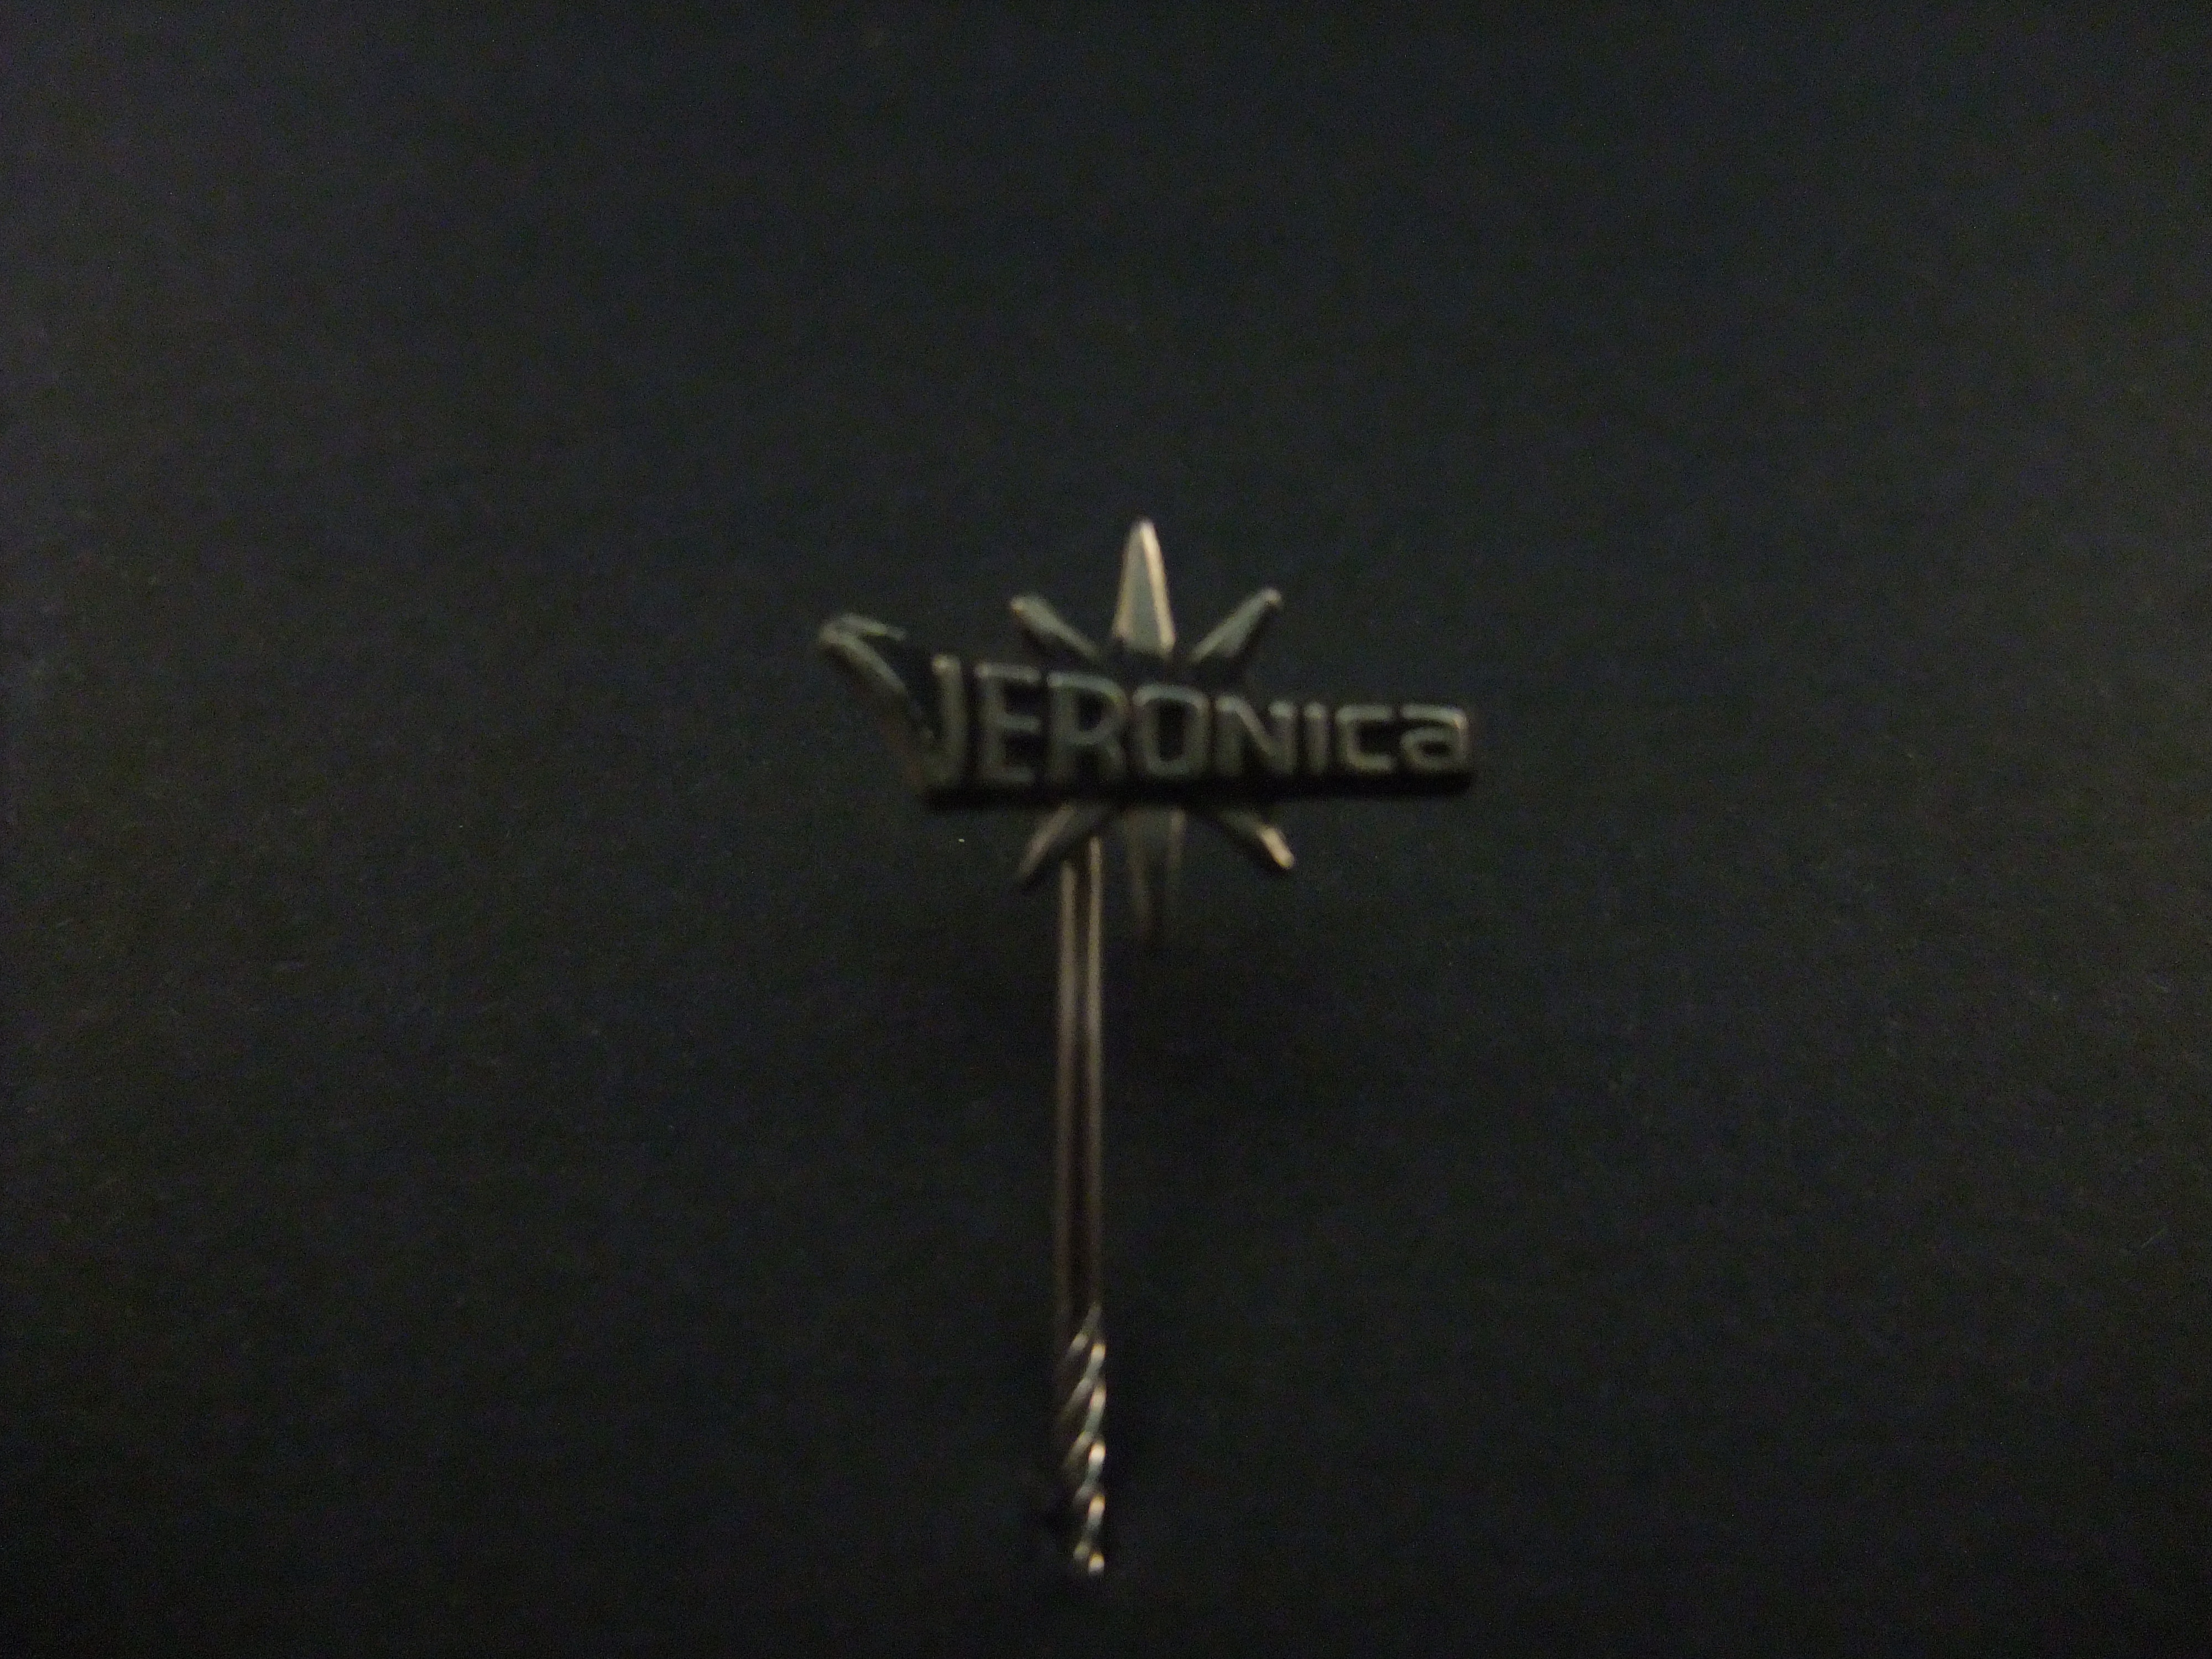 Veronica Omroep en voormalige zeezender, zilverkleurig logo